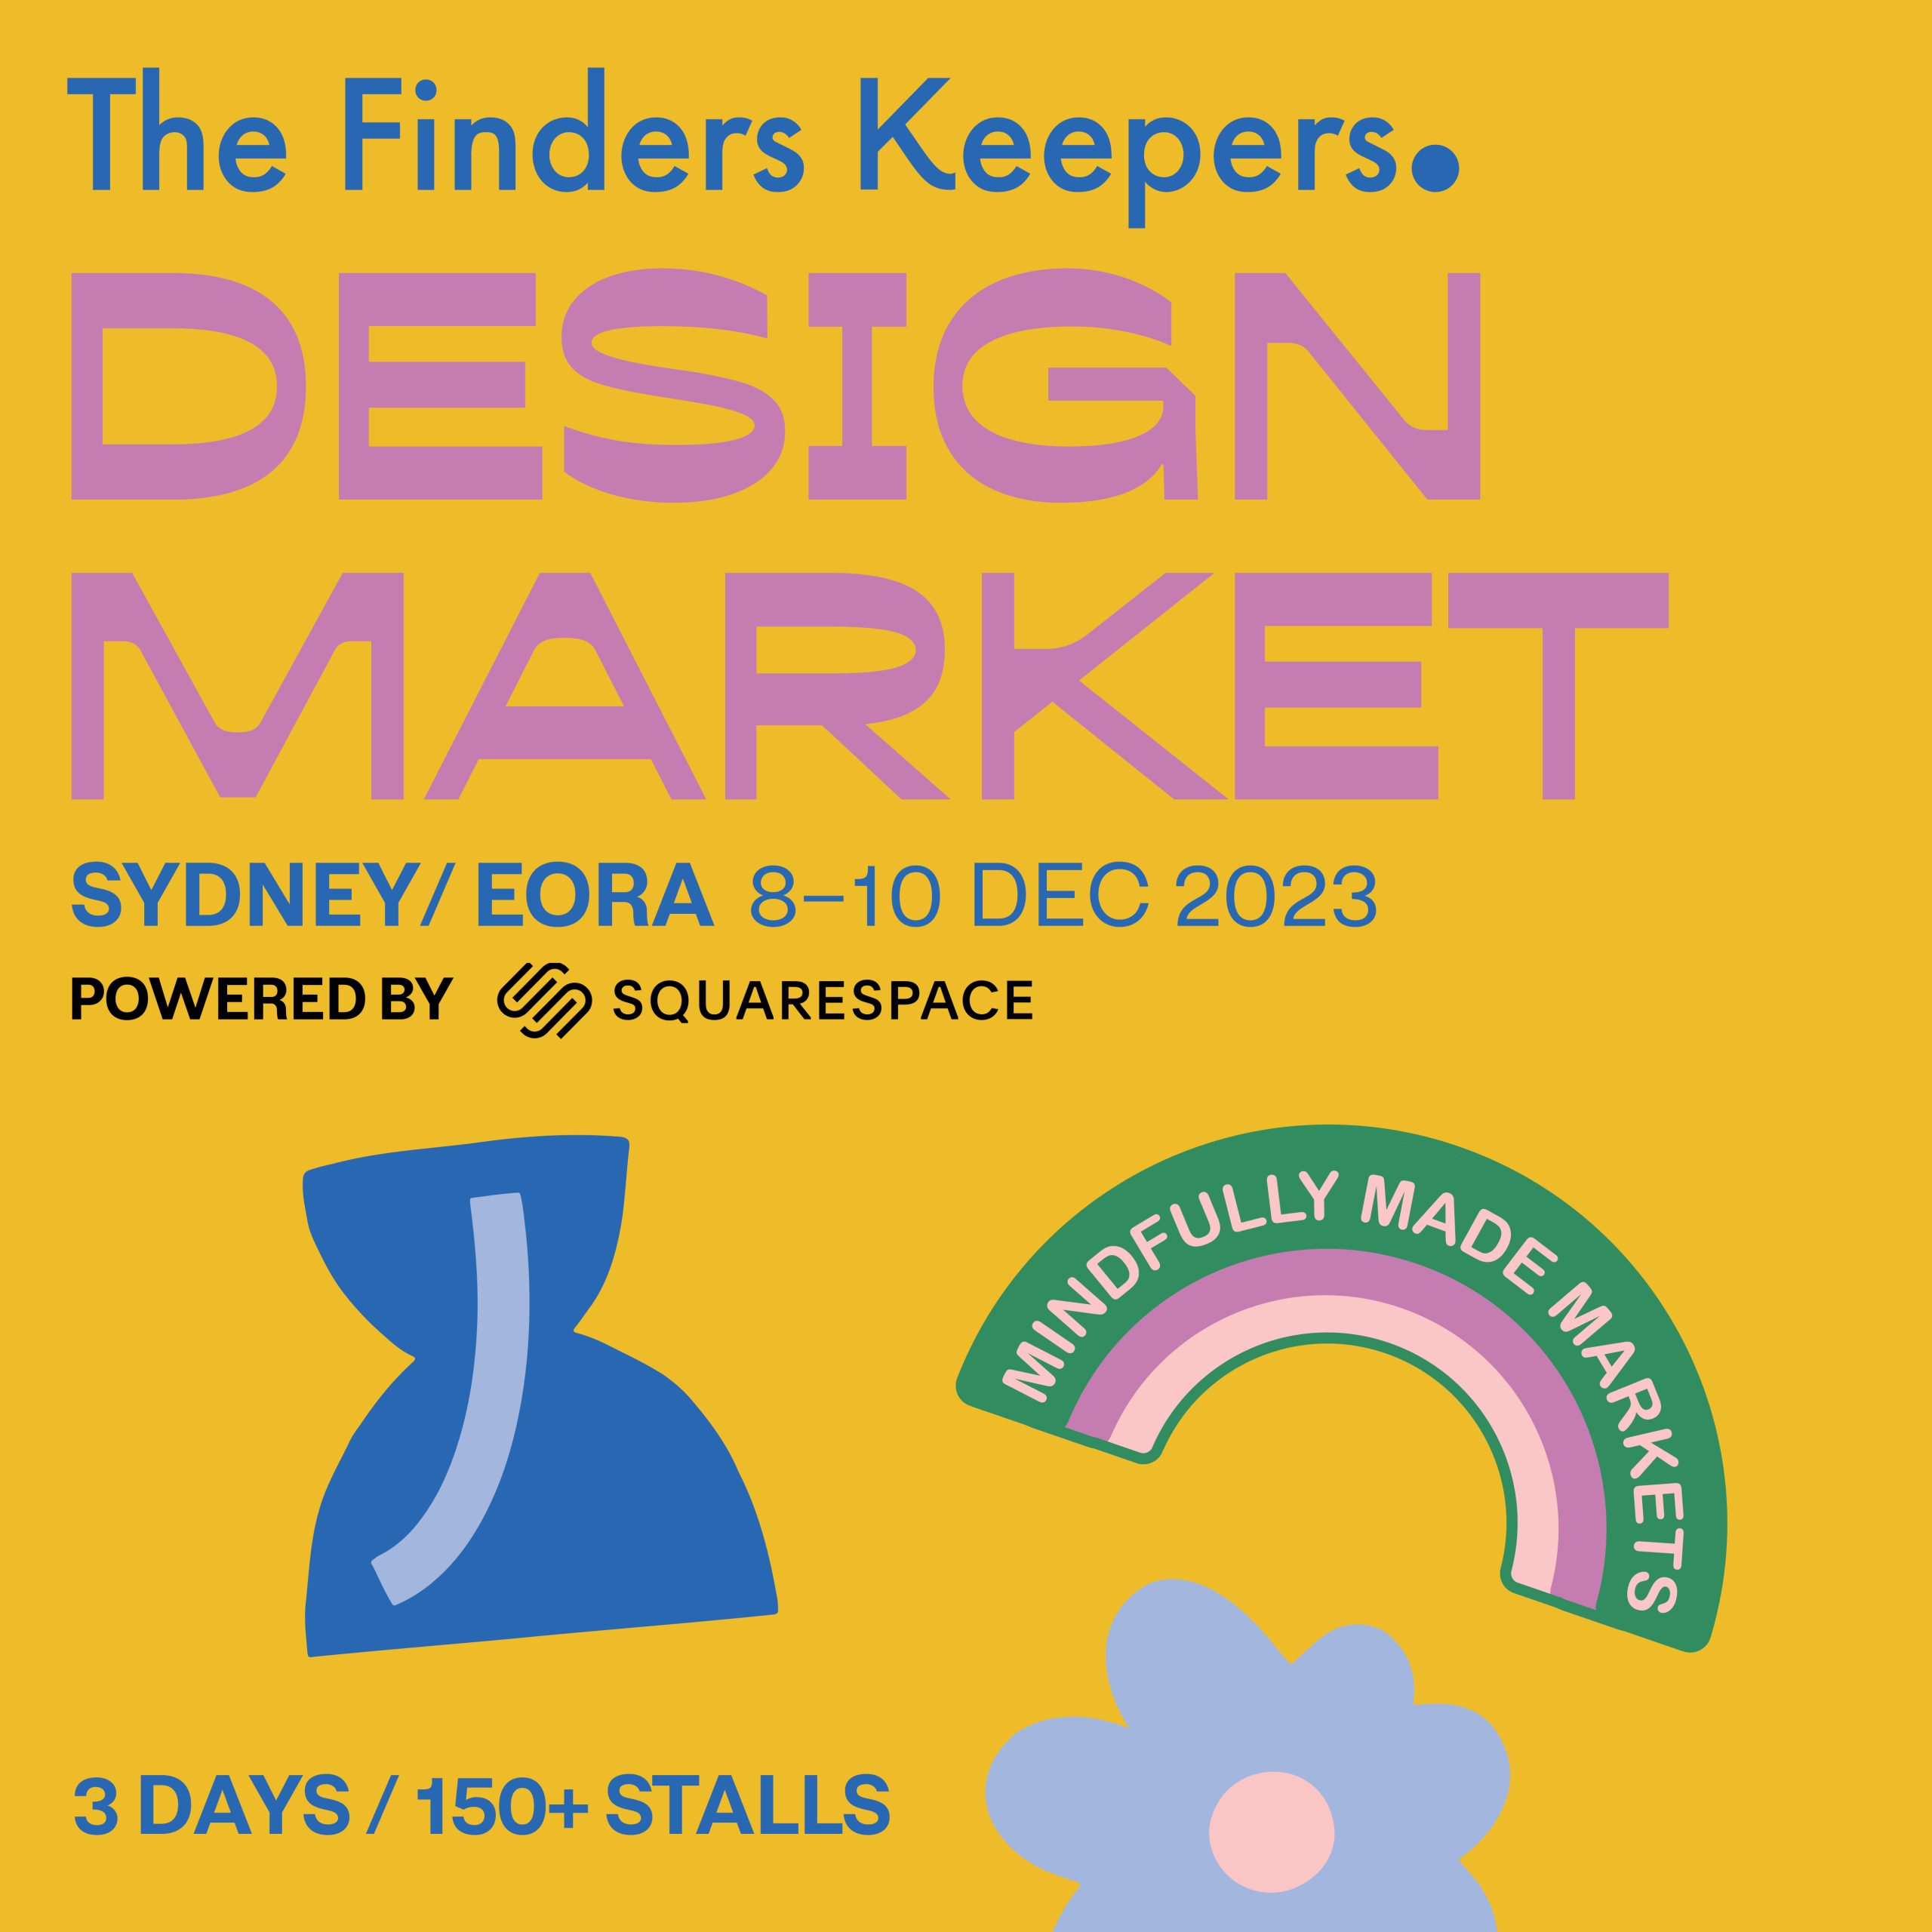 Sydney/Eora SS23 Market Highlights